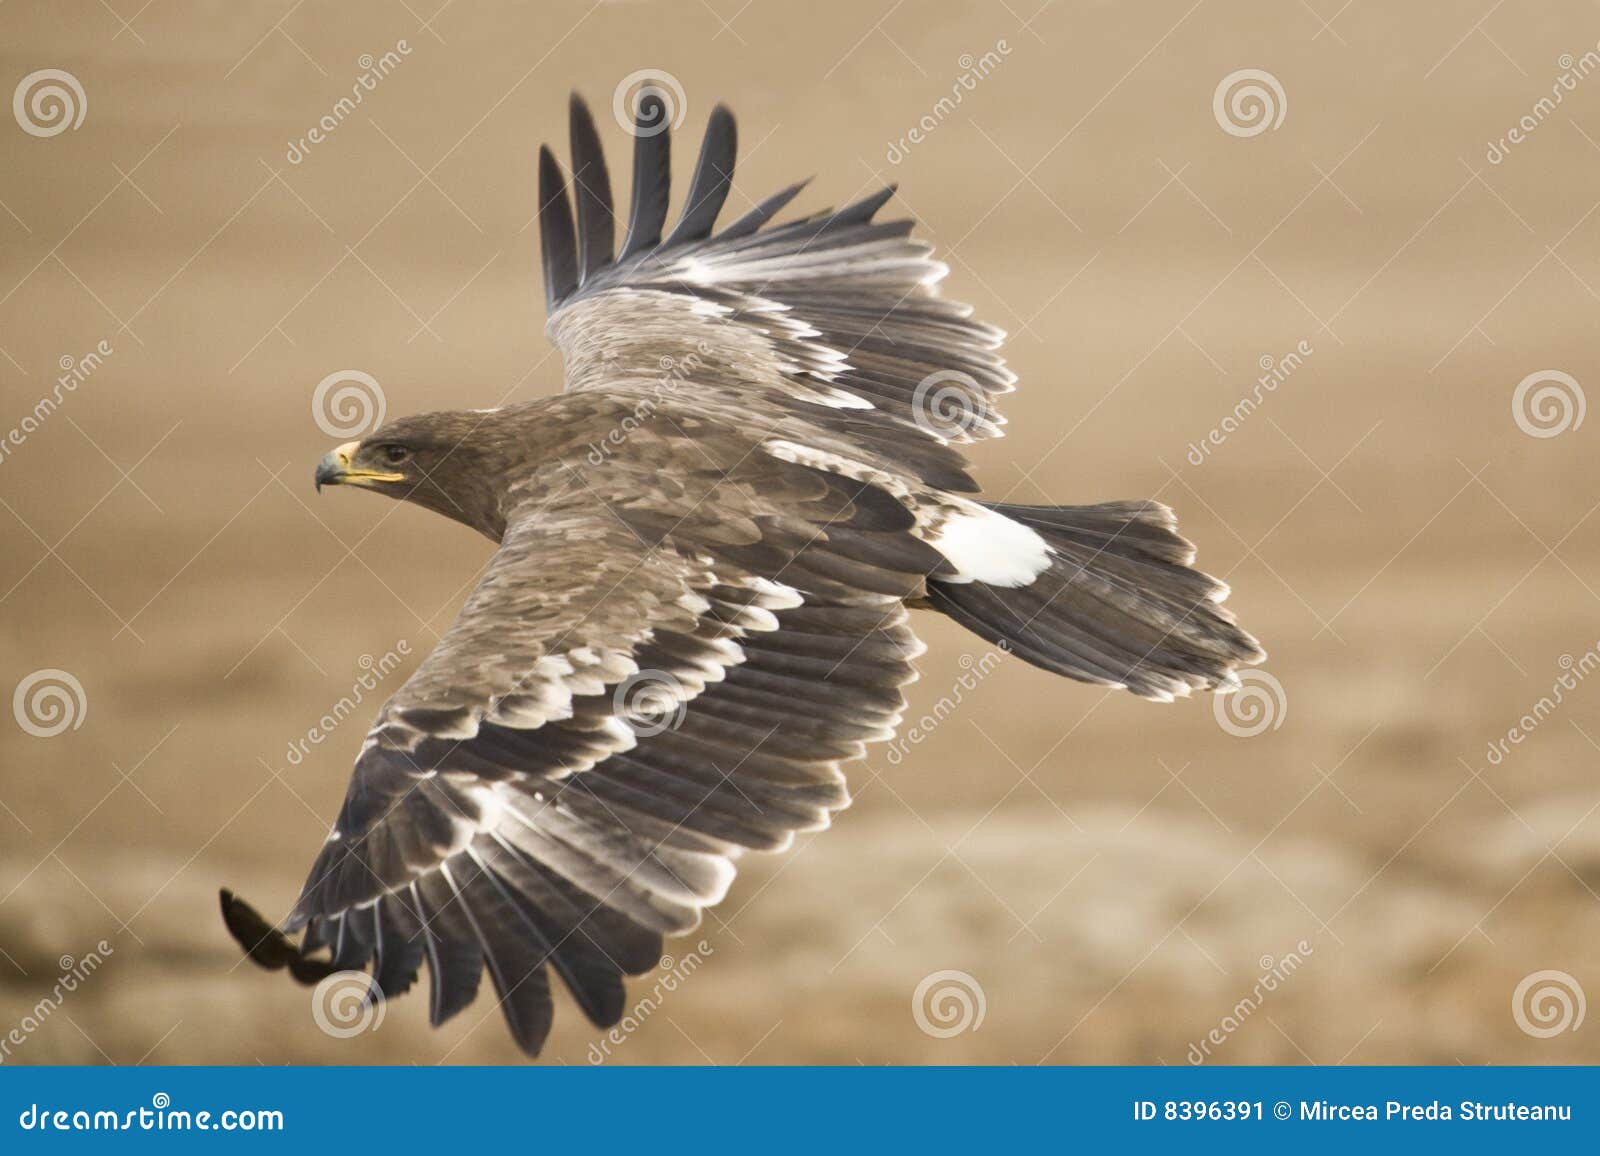 the steppe eagle